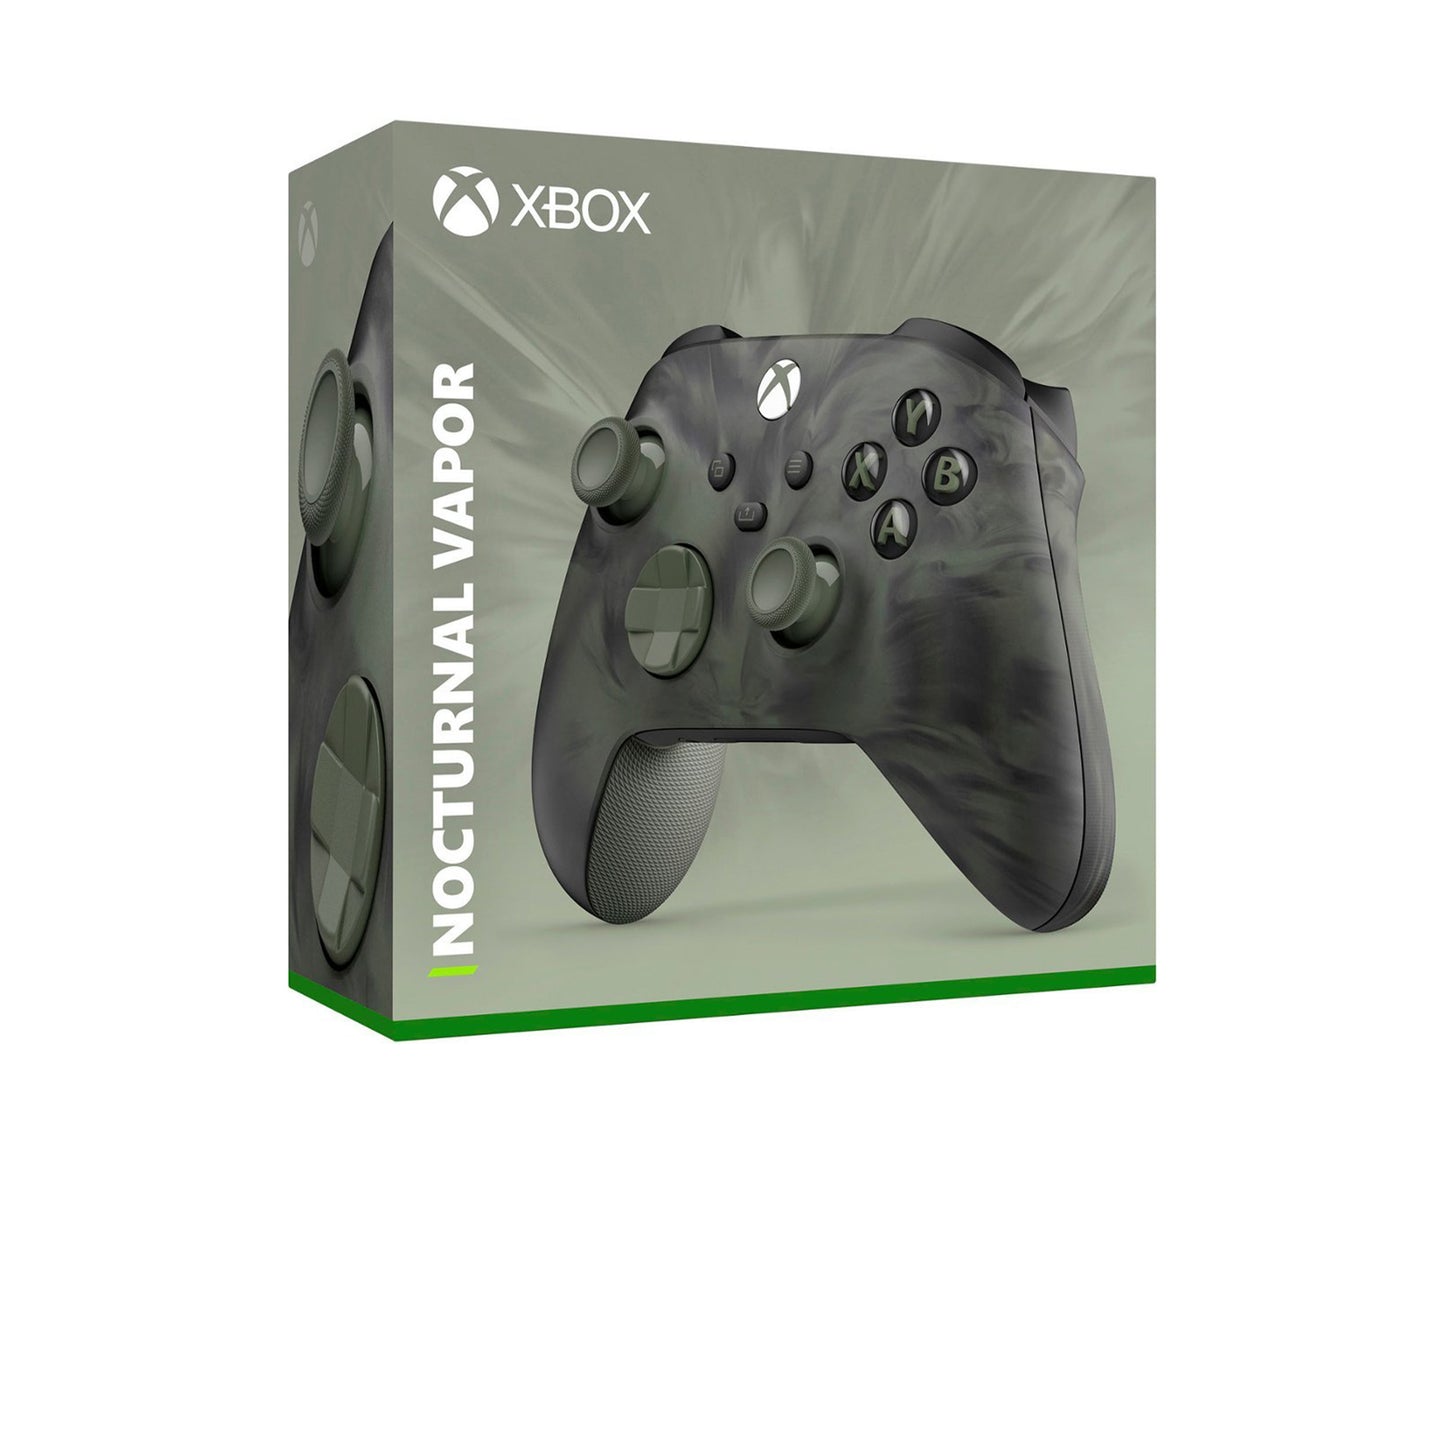 مايكروسوفت - وحدة تحكم Xbox اللاسلكية لأجهزة Xbox Series X وXbox Series S وXbox One وأجهزة Windows - إصدار خاص من Nocturnal Vapor 